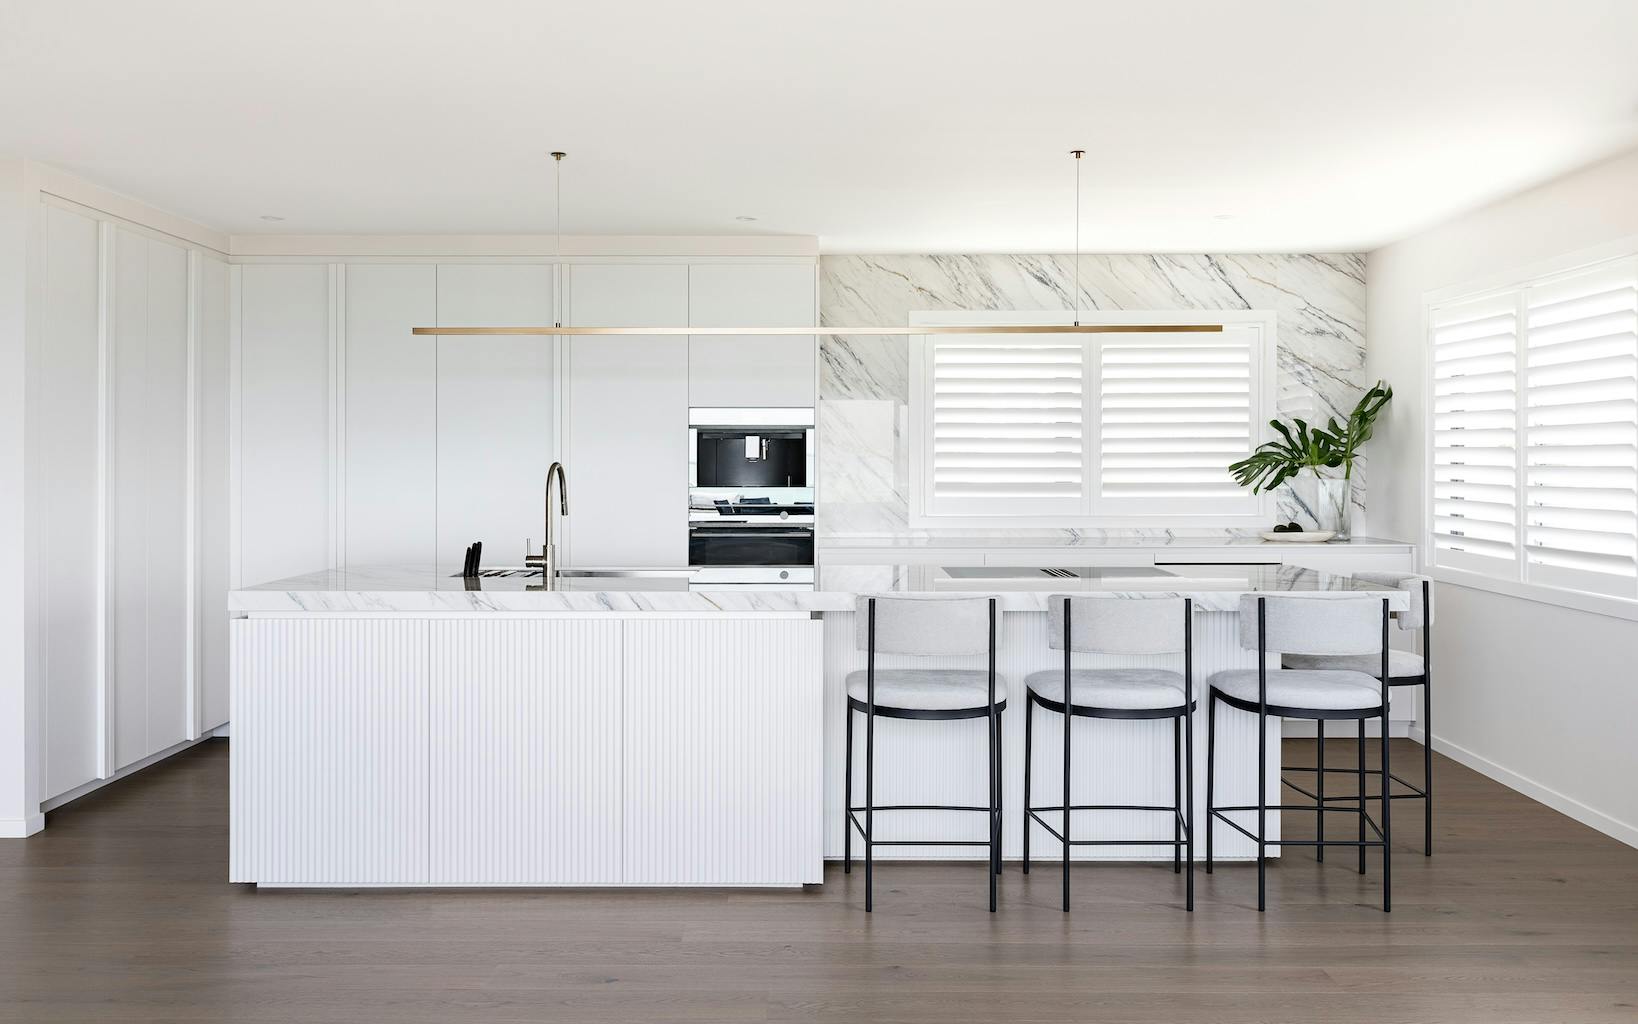 Imagen número 89 de Un apartamento de diseño italiano consigue integrar con elegancia cocina y comedor gracias a Dekton